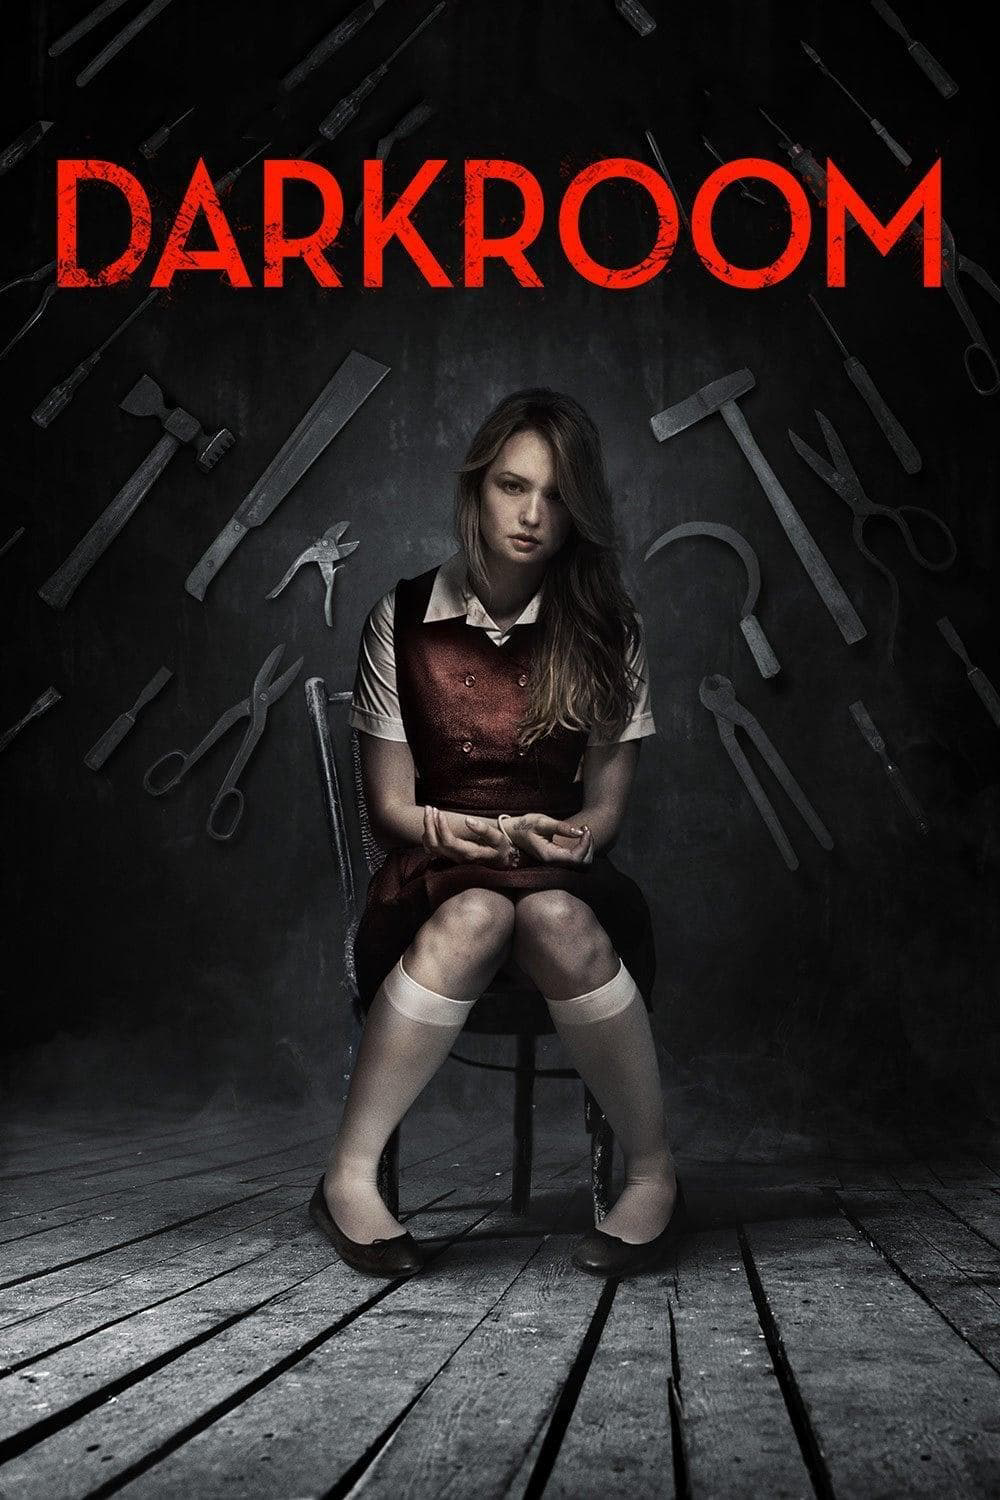 Darkroom - Darkroom